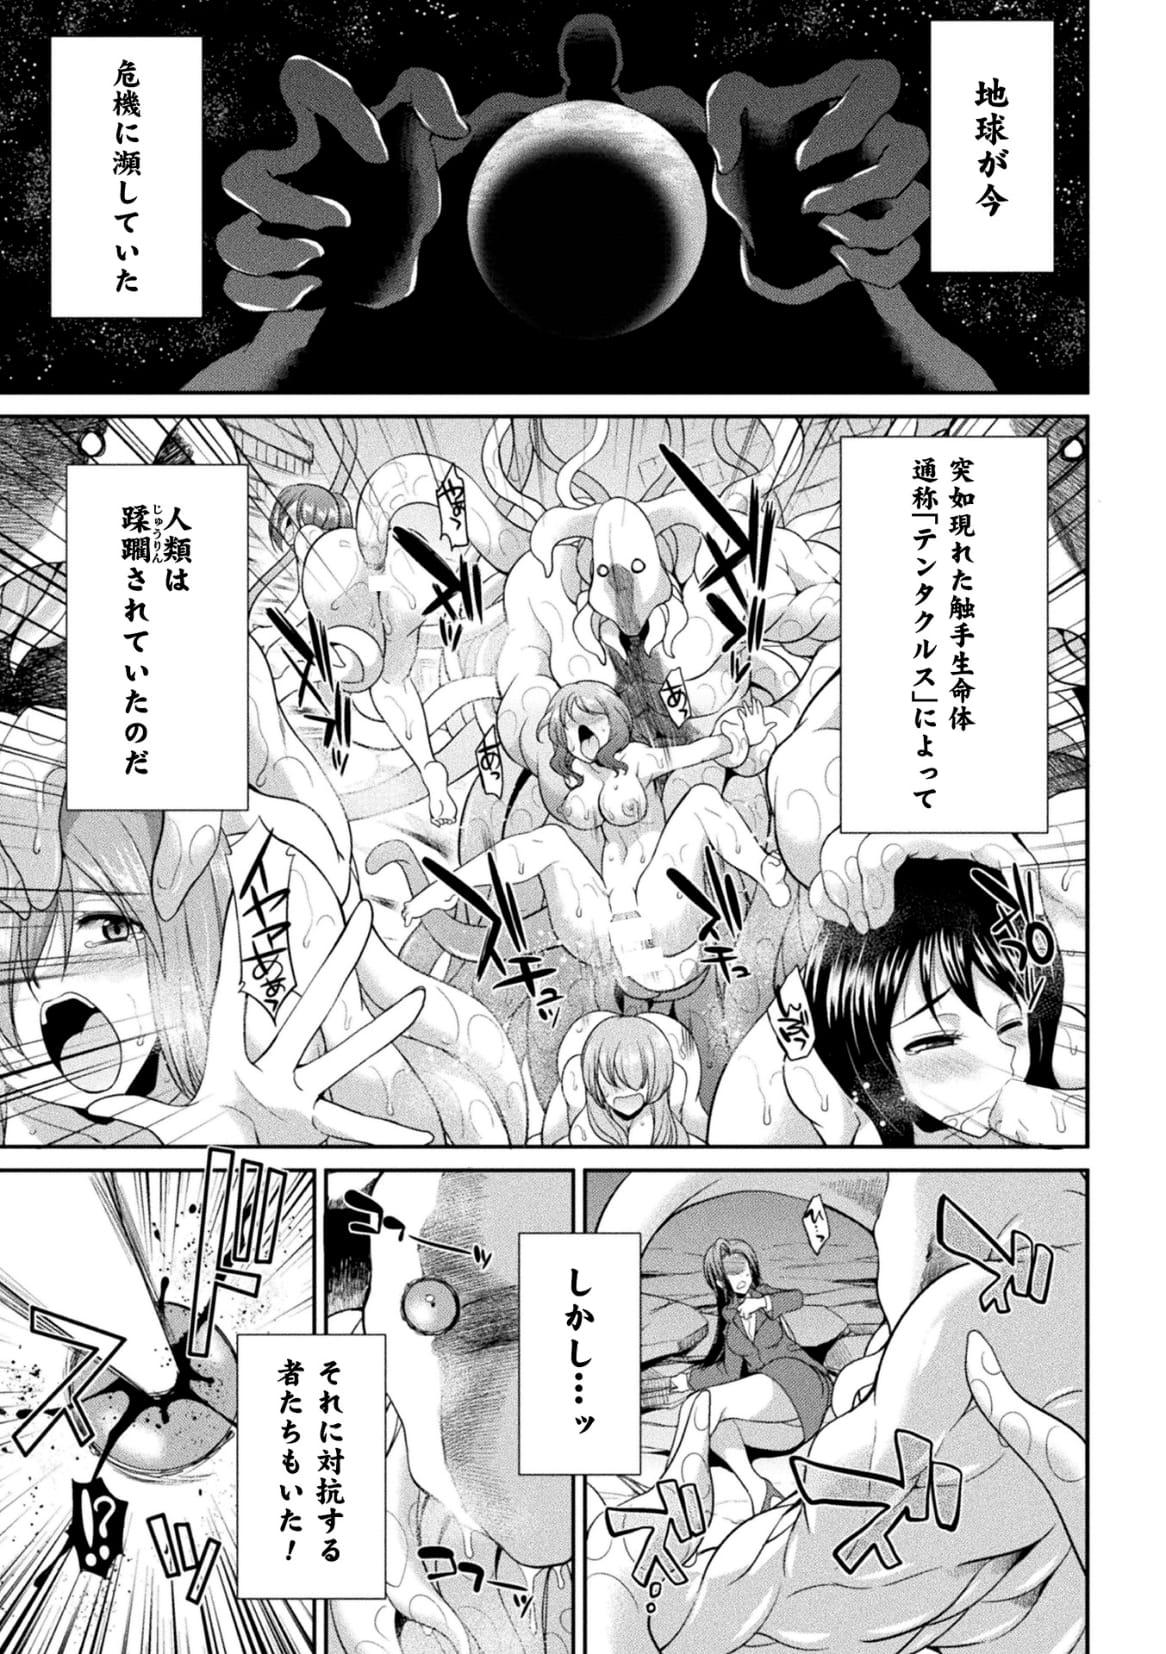 Beard Tokumu Sentai Colorful Force Seigi no Heroine vs Shokushu Joou! Futanari Choukyou Daikessen!? Futa - Page 5